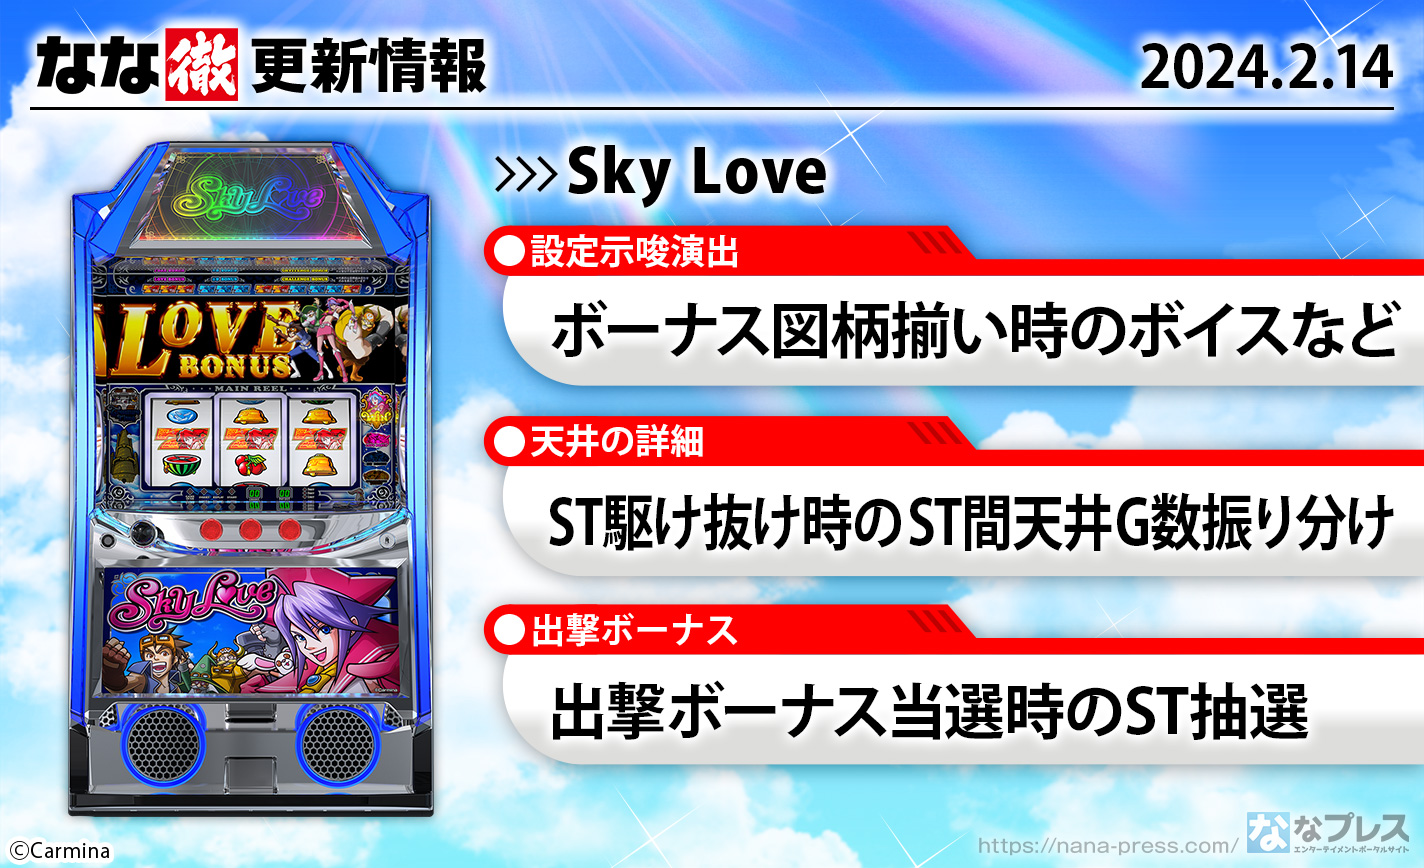 【Sky Love】ボーナス図柄関連の設定示唆演出、天井短縮時のST間ゲーム数振り分け、出撃ボーナス当選時のST抽選などを更新しました。【2月14日解析情報更新】